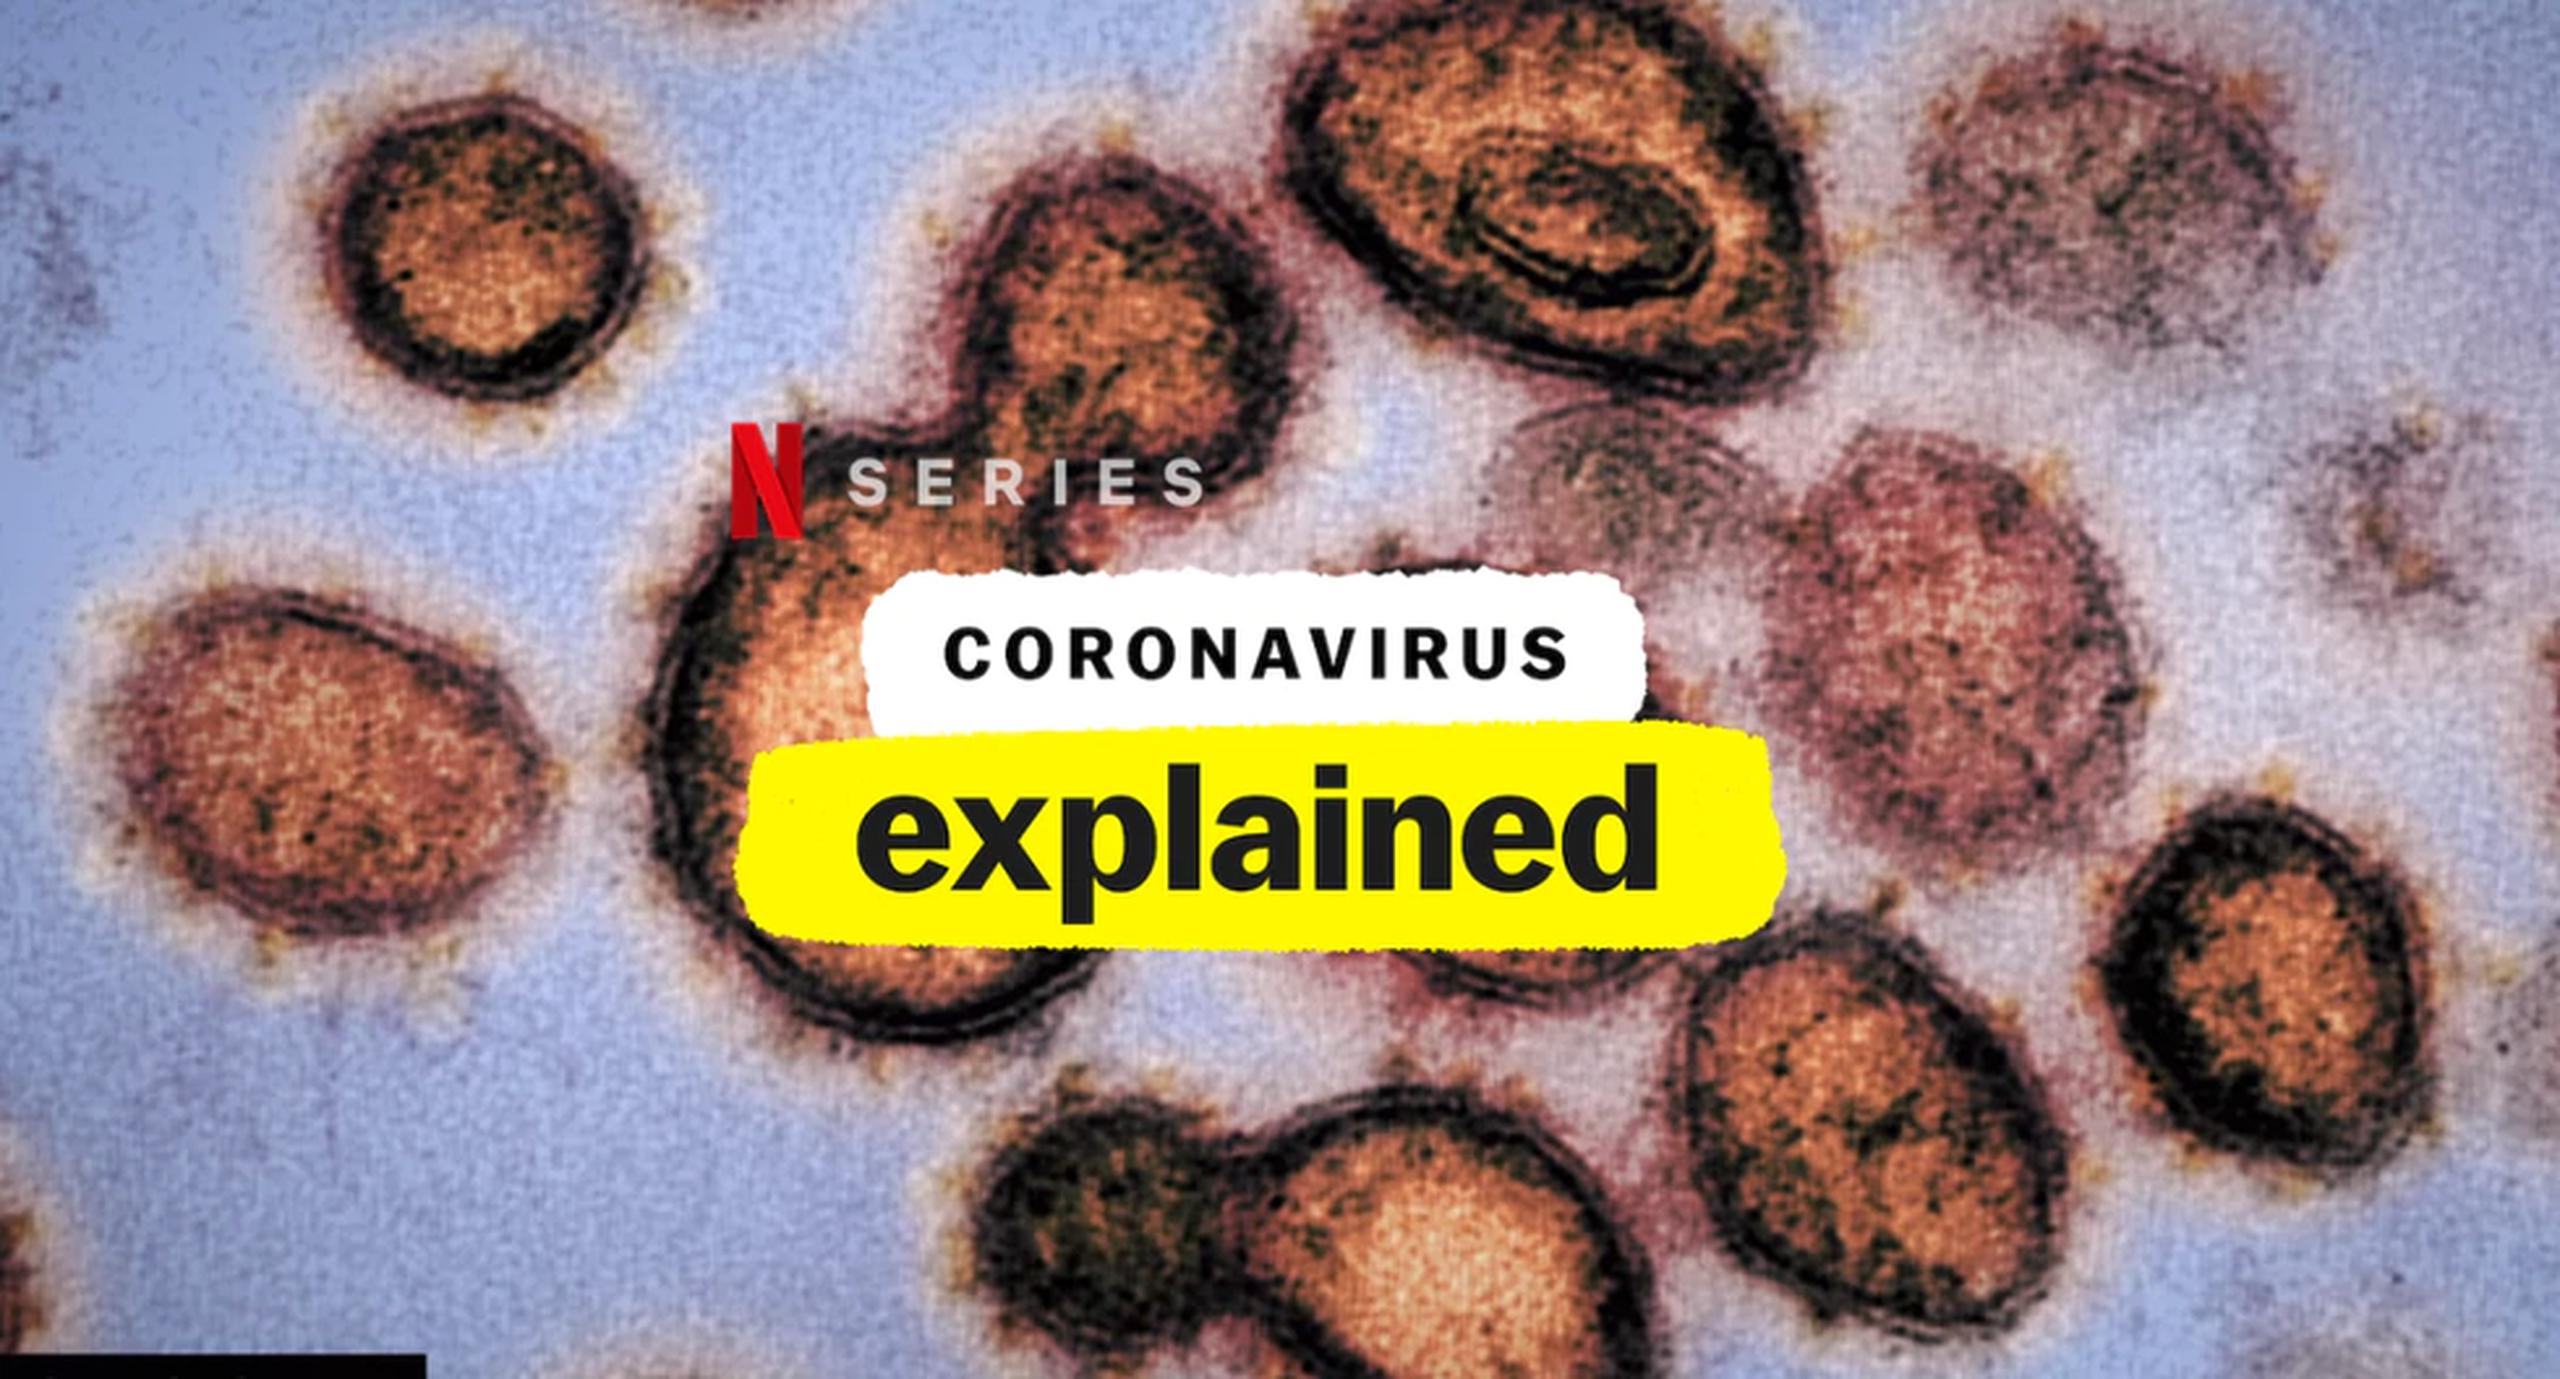 "Coronavirus, explained" de momento tiene solo un episodio, en el cual explica el origen de la pandemia y cómo mantenerse a salvo.